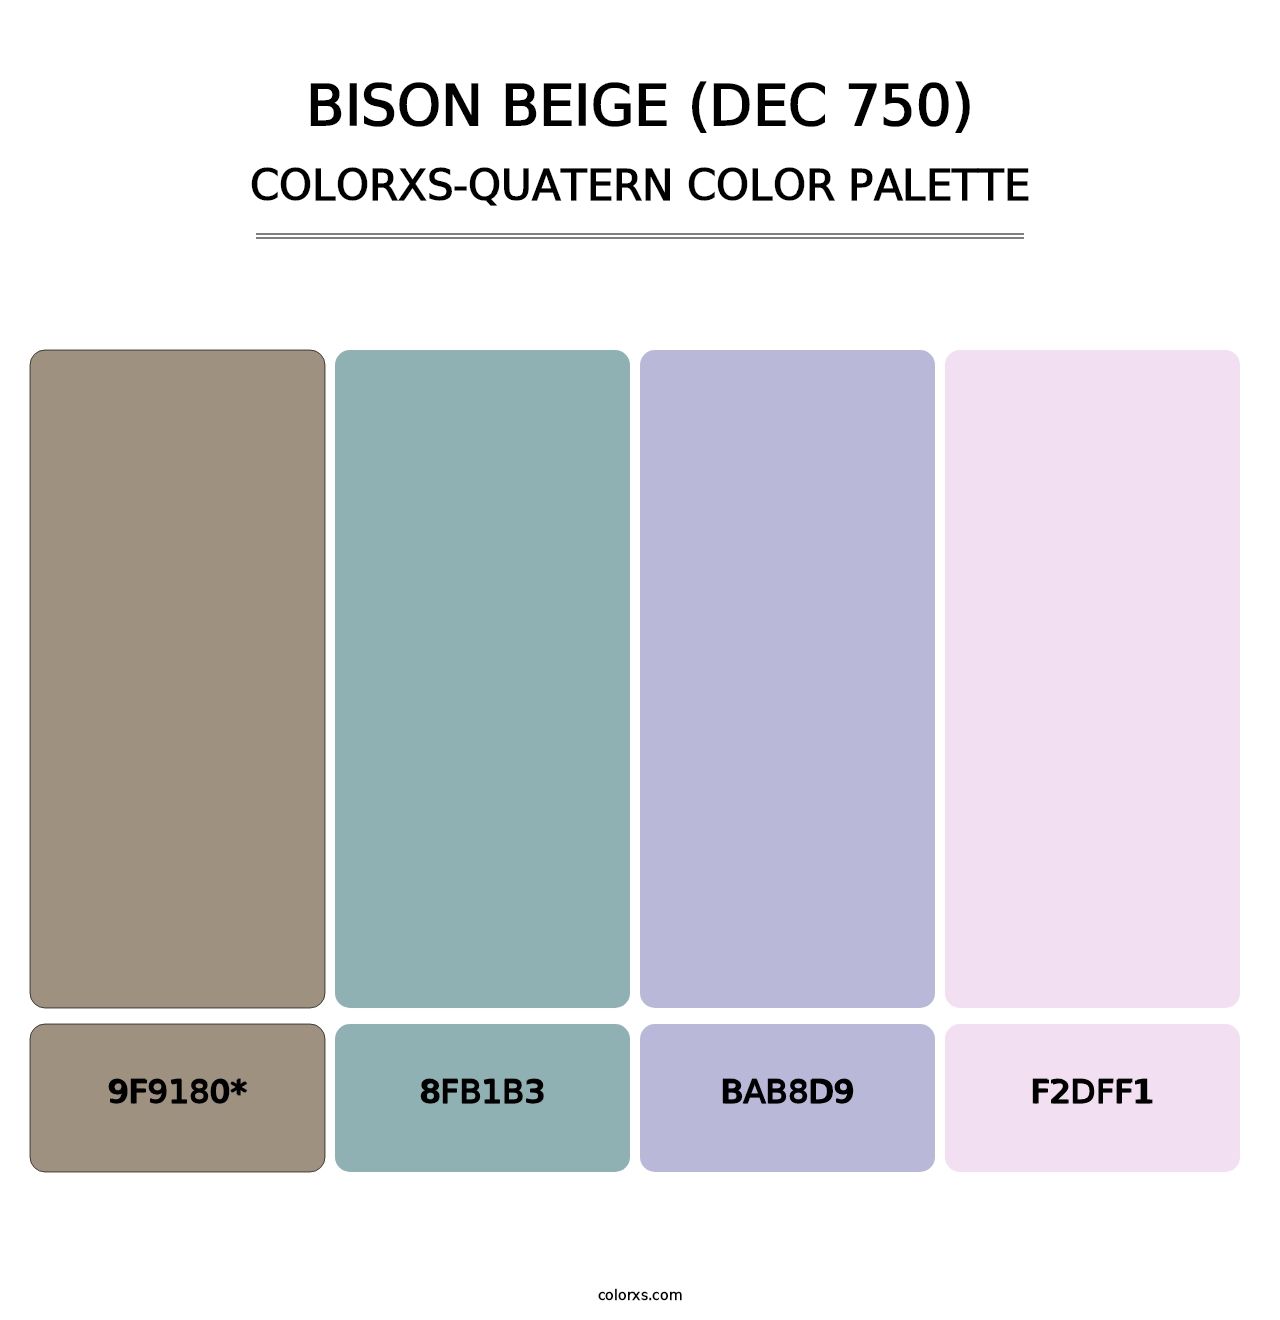 Bison Beige (DEC 750) - Colorxs Quatern Palette